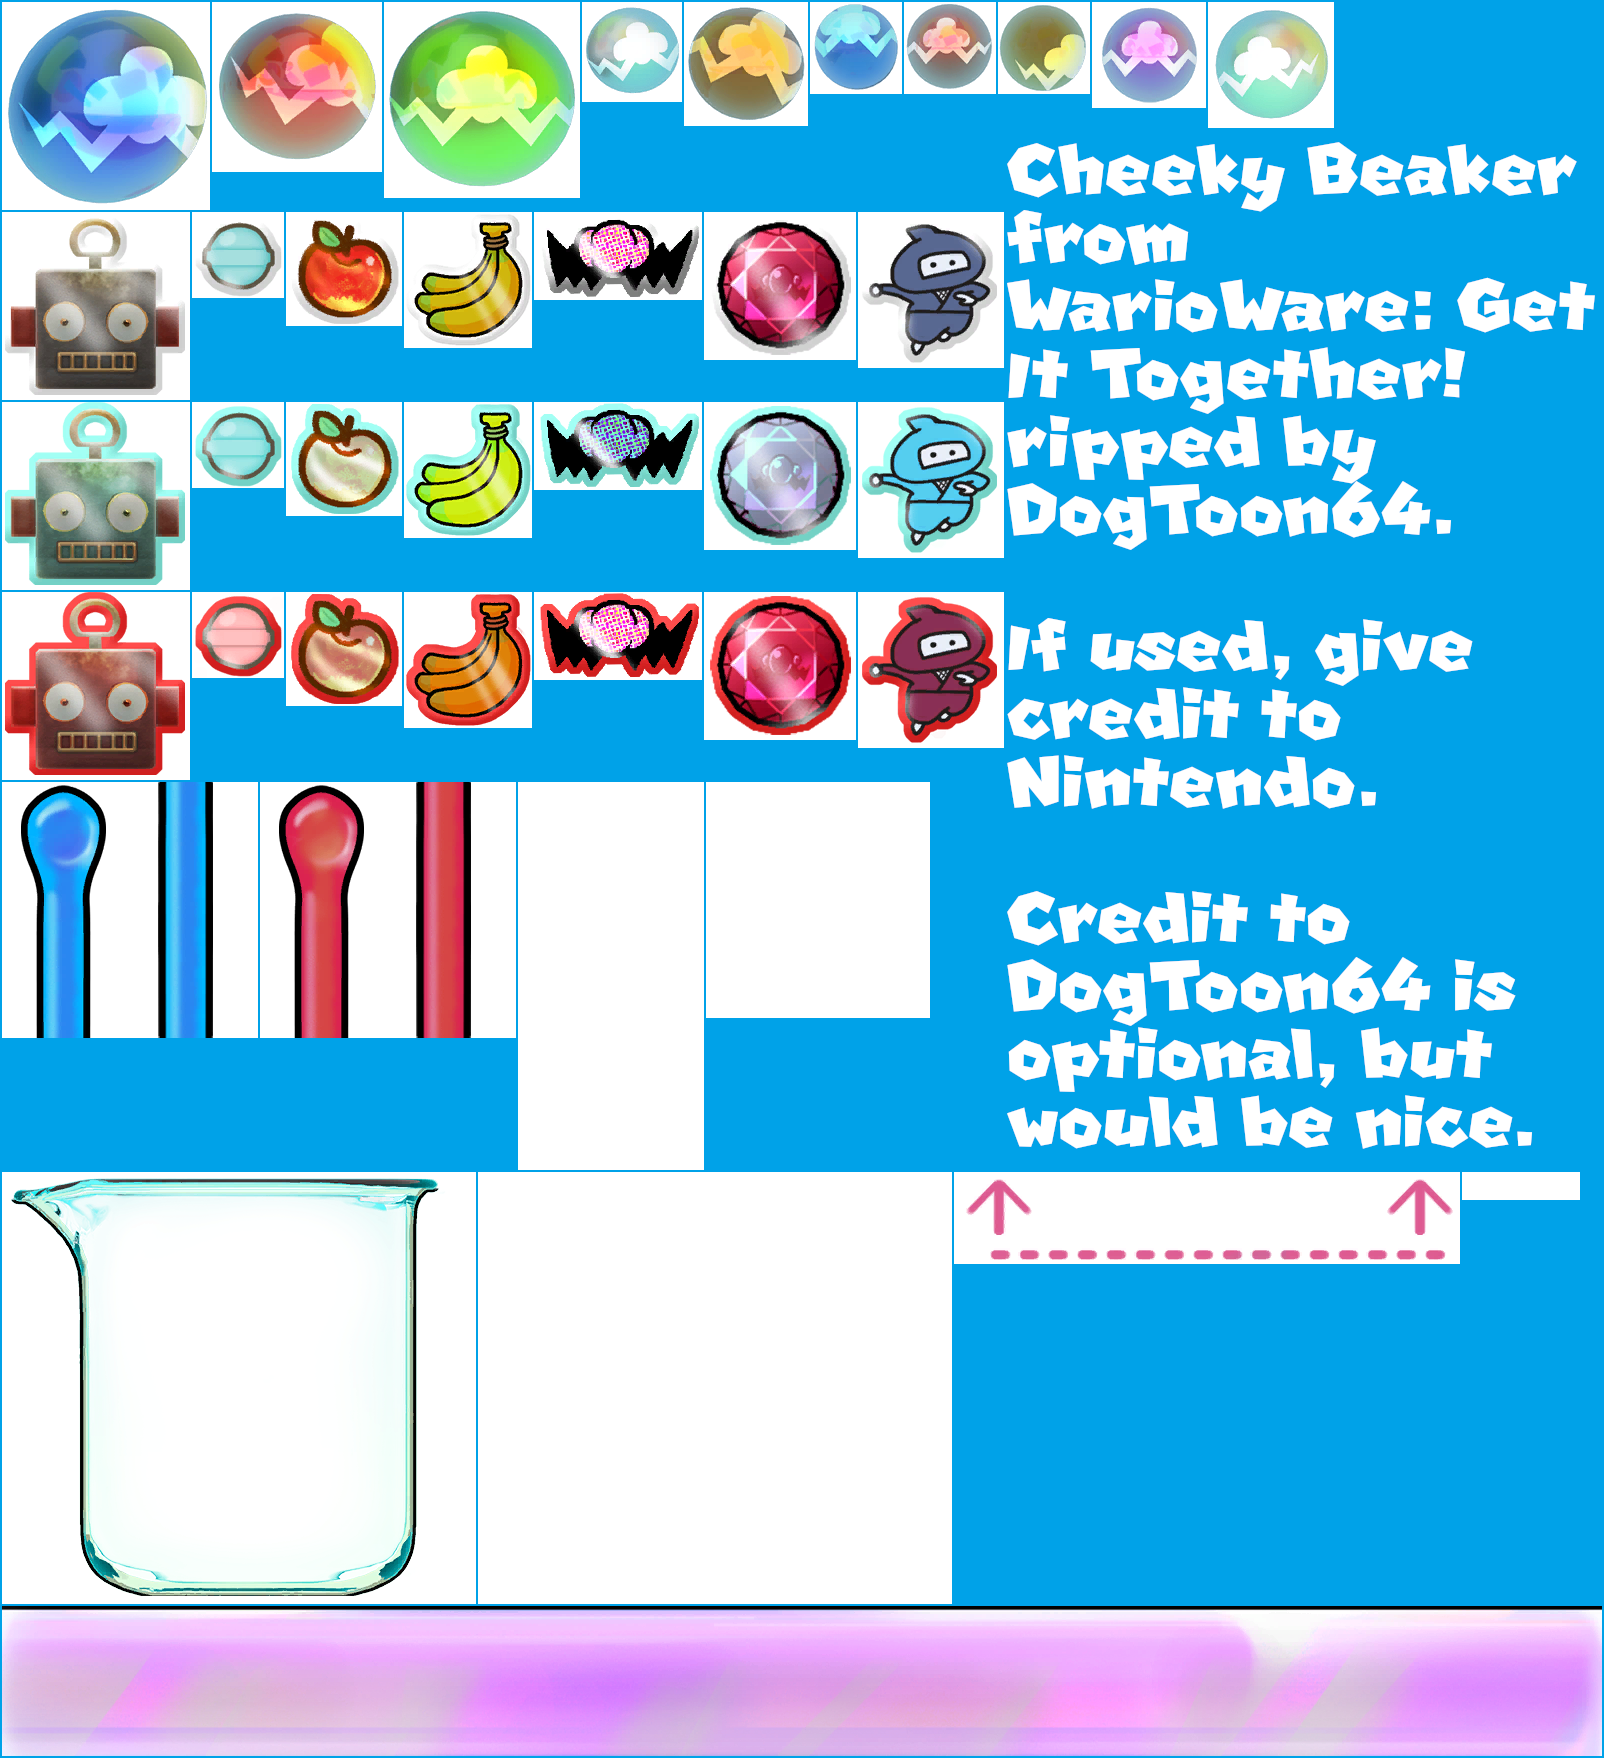 WarioWare: Get It Together! - Cheeky Beaker